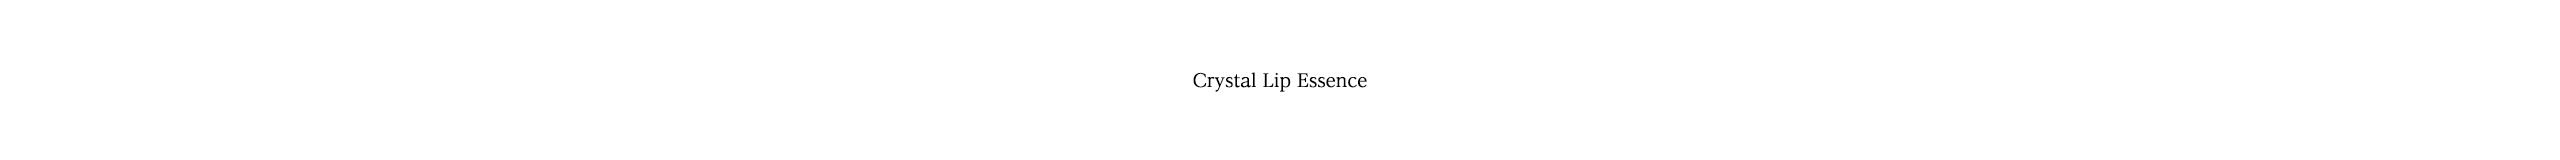 Crystal Lip Essence